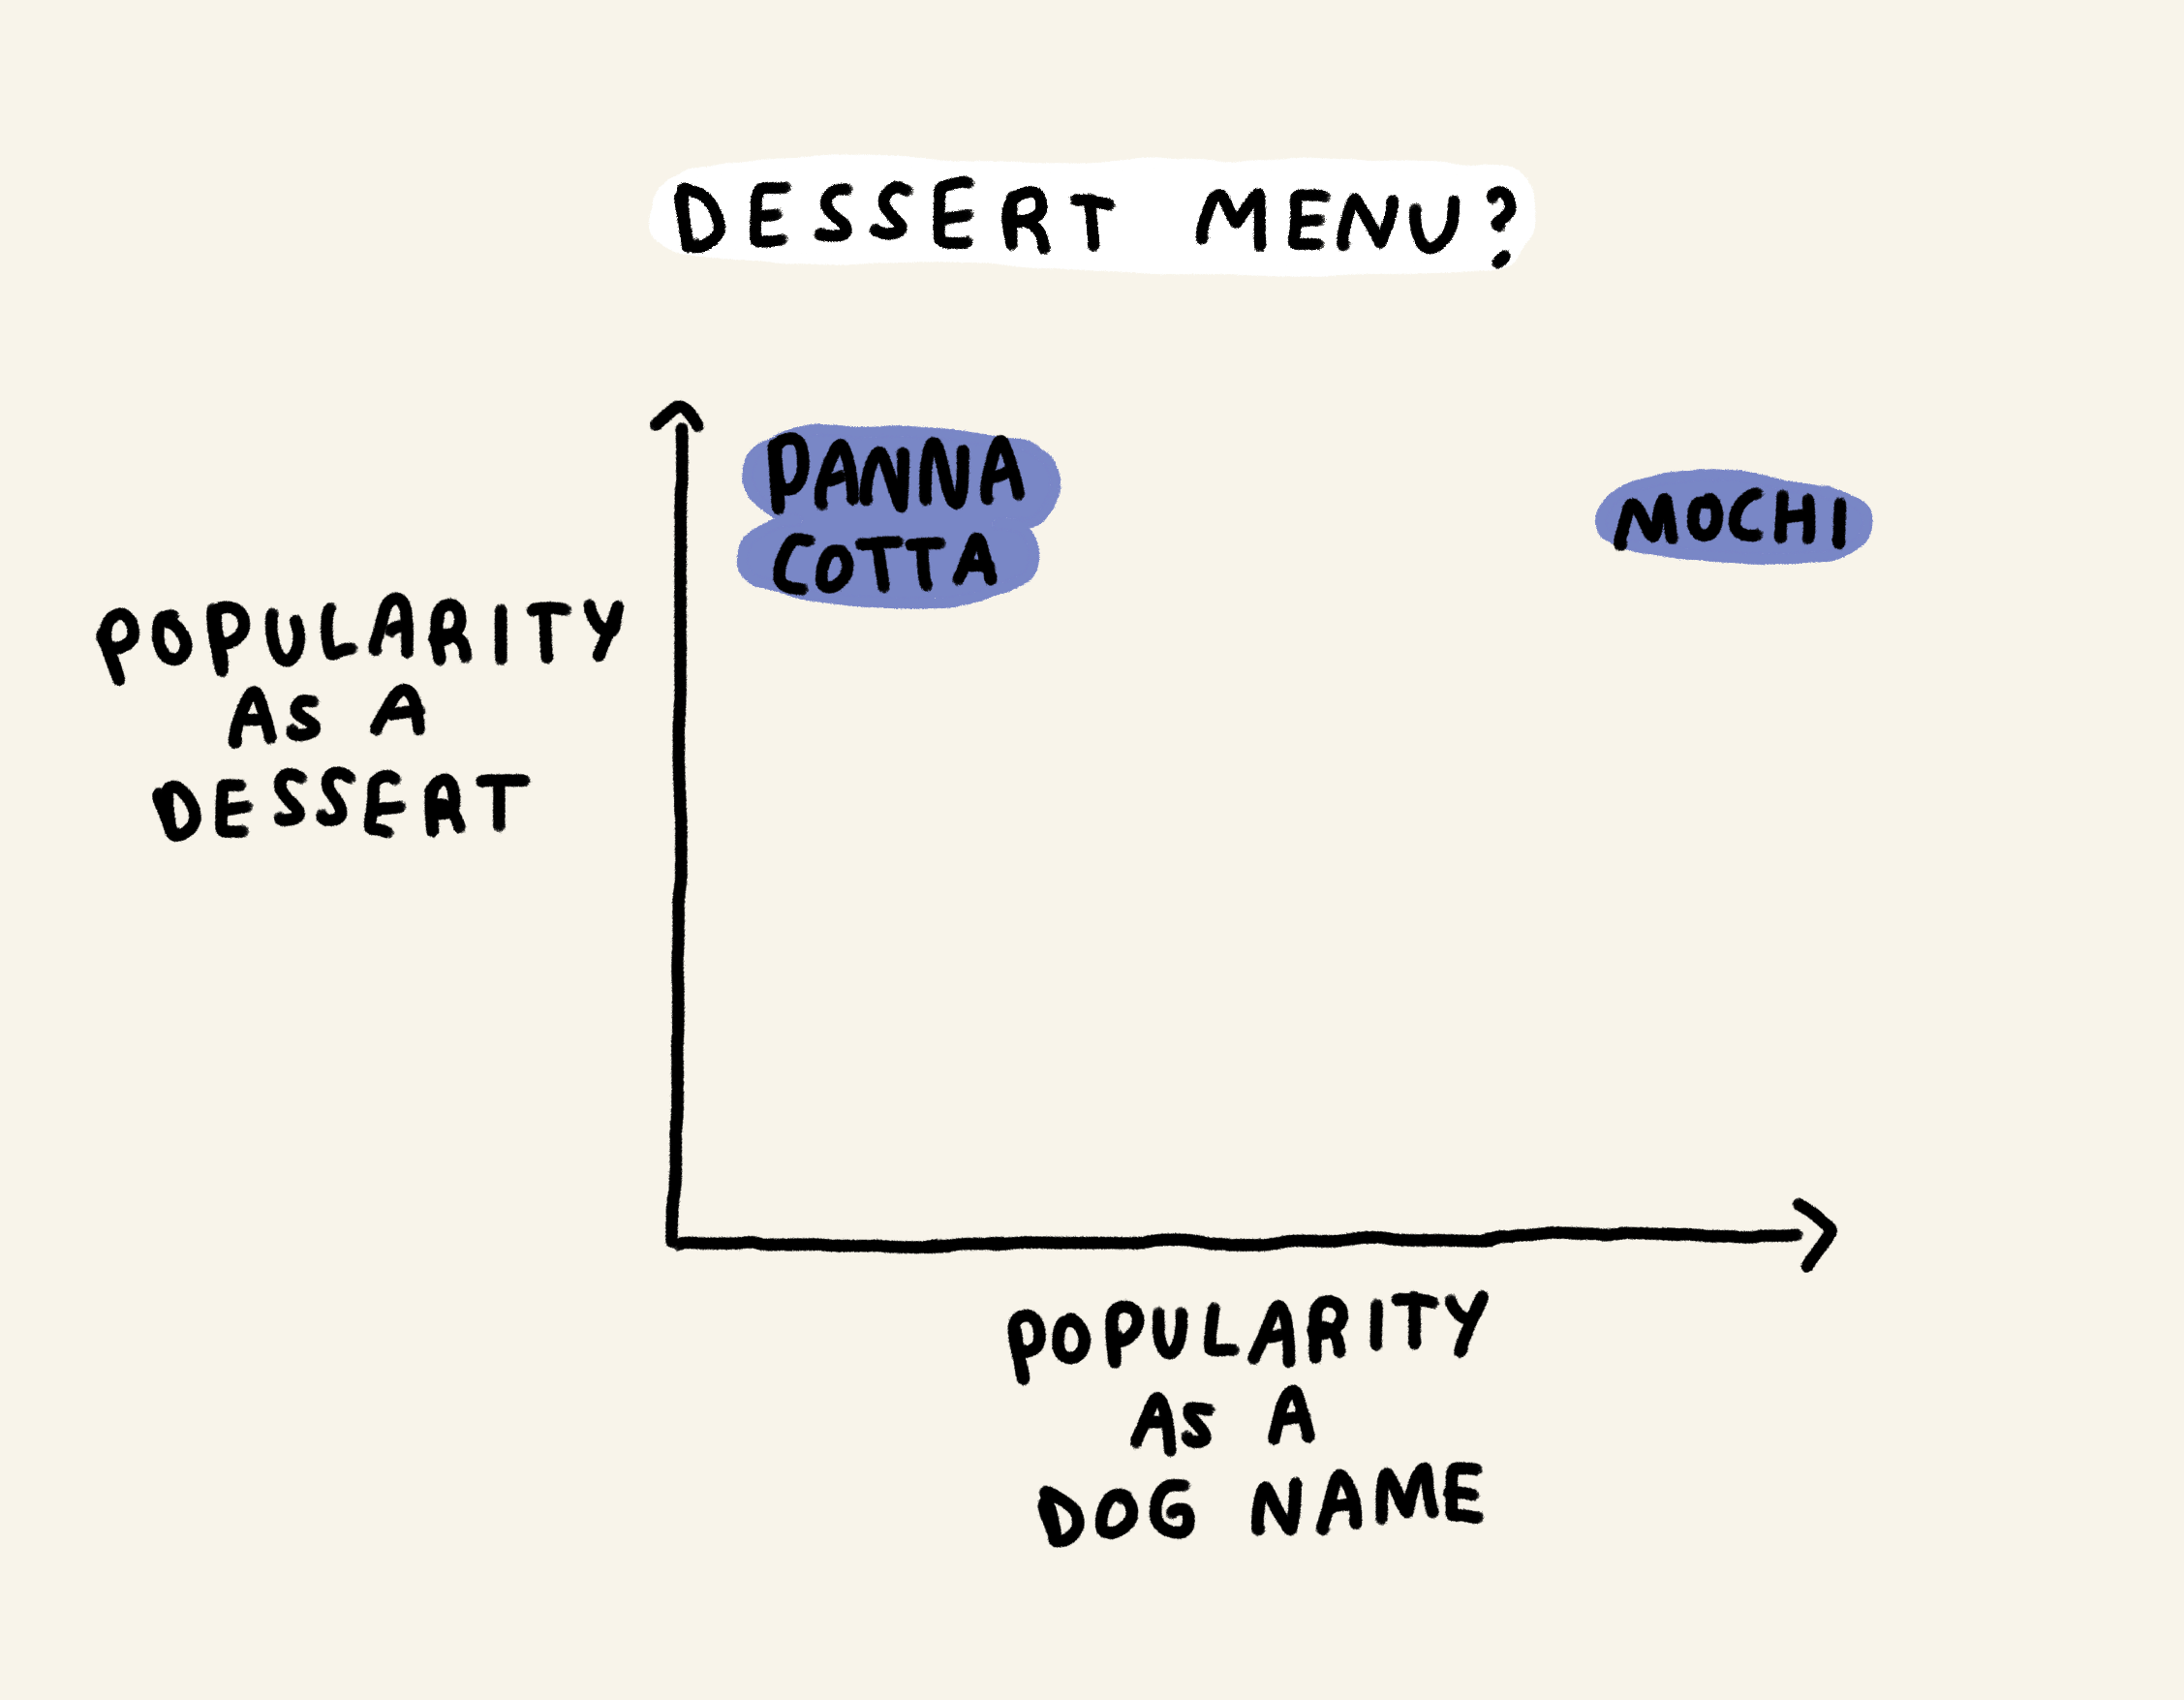 Dessert menu?

Popularity as a dessert = panna cotta
Popularity as a dessert and a dog name = mochi